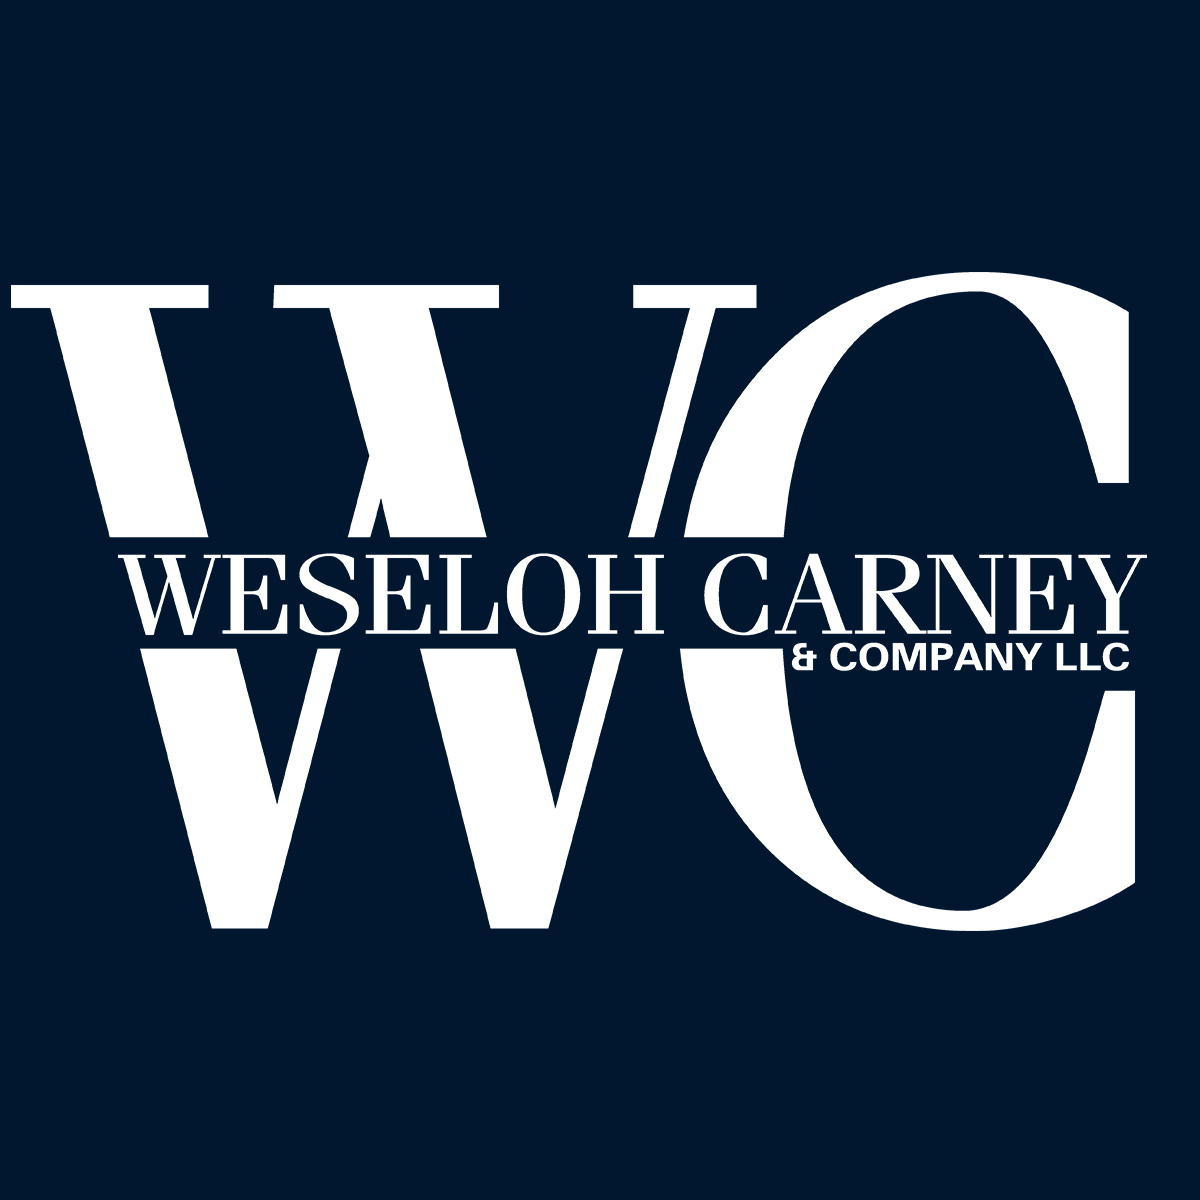 Weseloh Carney & Co LLC